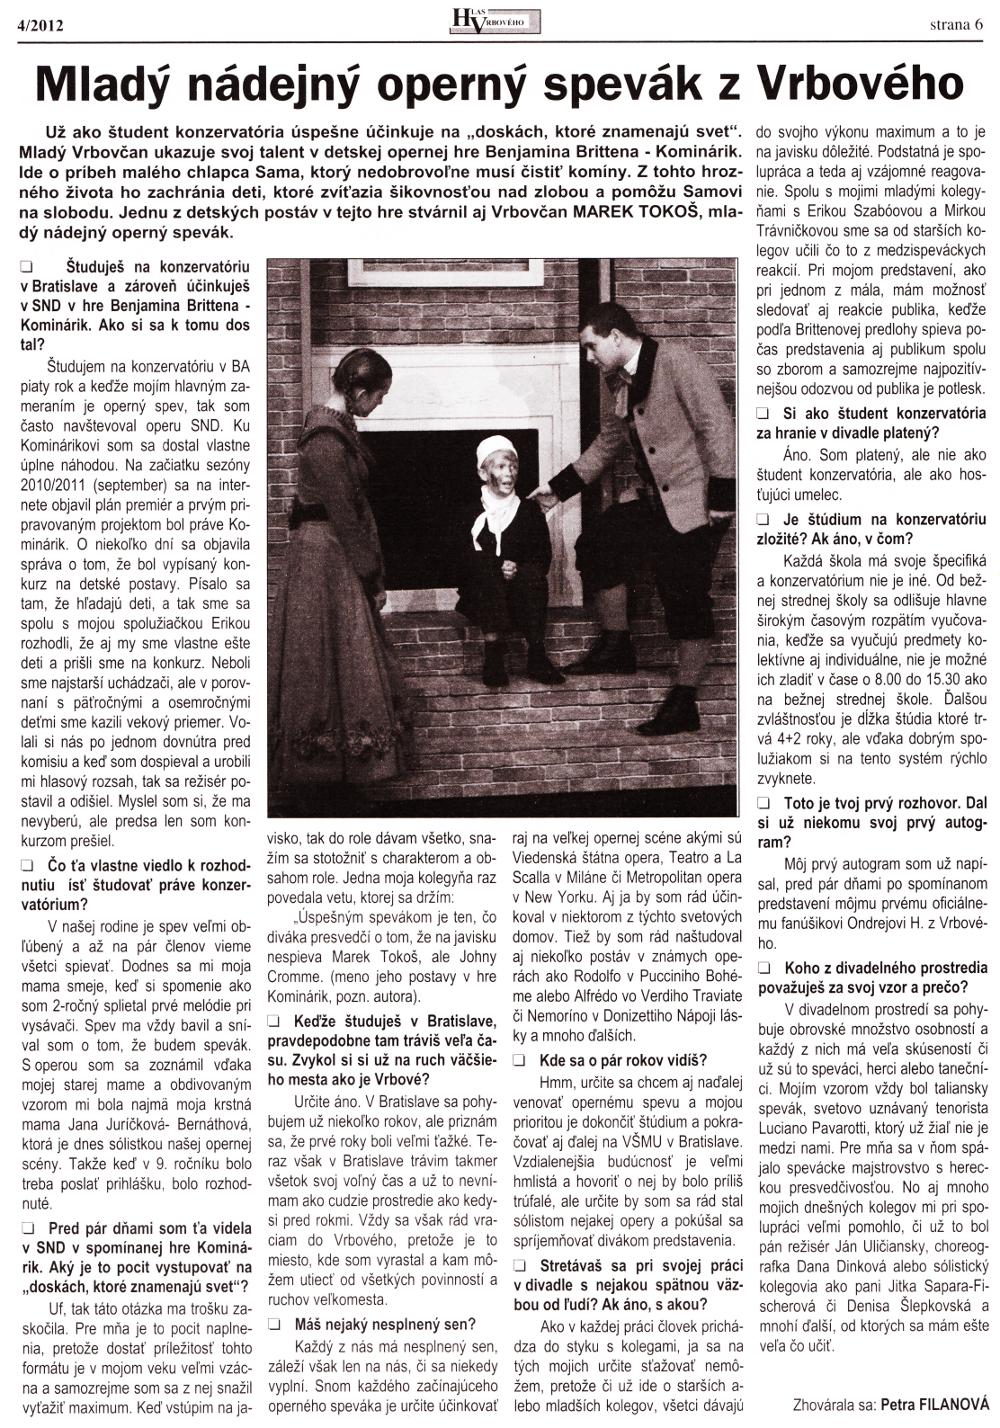 Hlas Vrbového 04/2012, strana 6